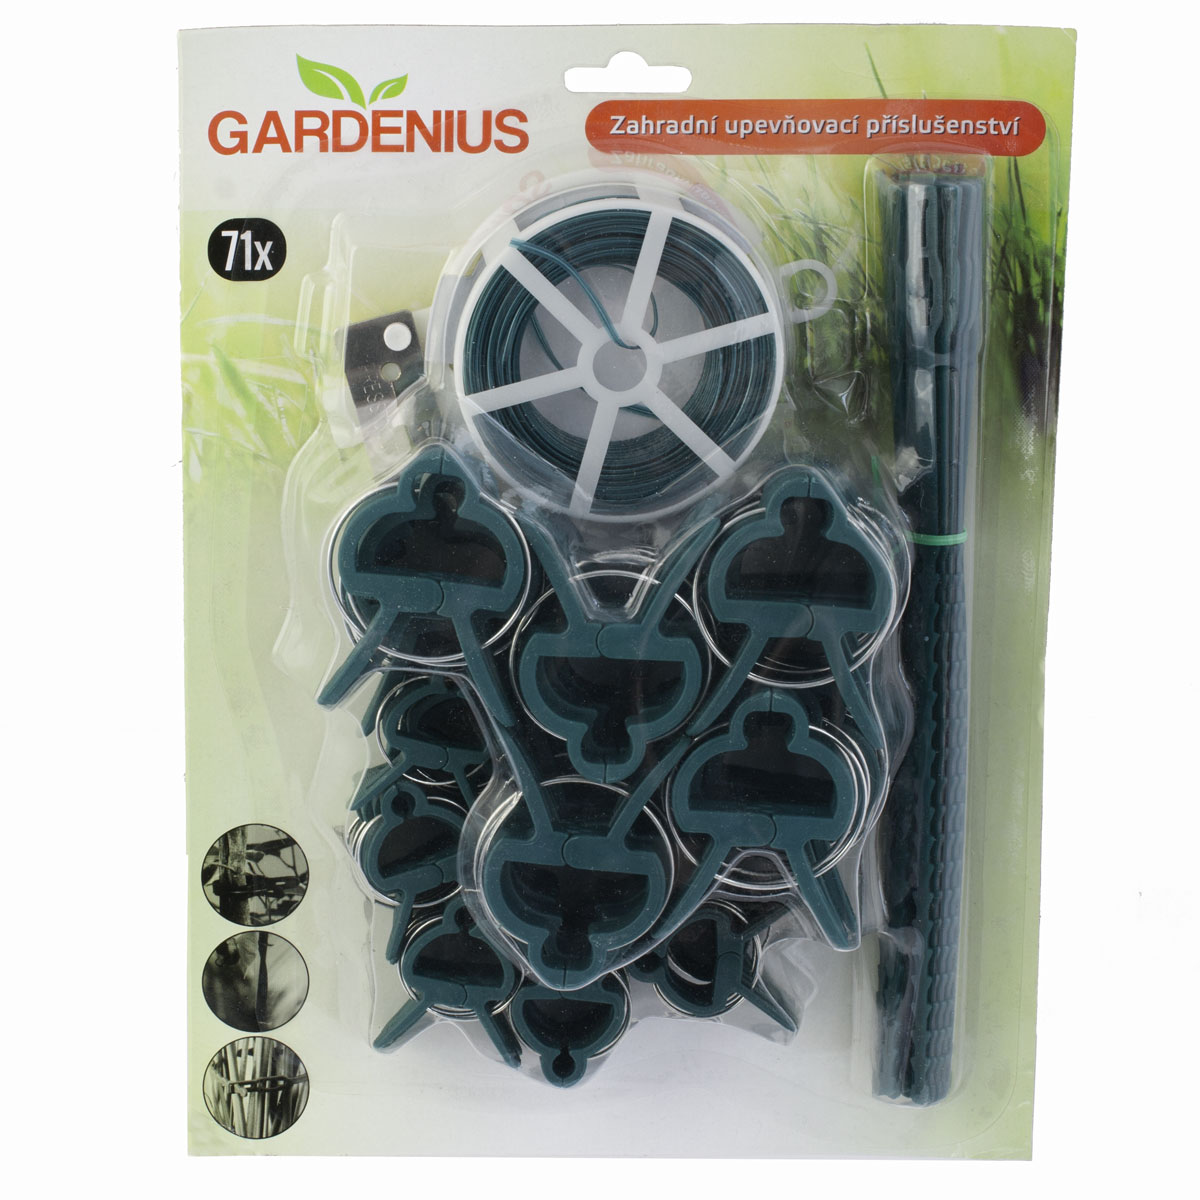 Zahradní upevňovací příslušenství 71 dílů Gardenius (AKCE 2+1 ZDARMA)